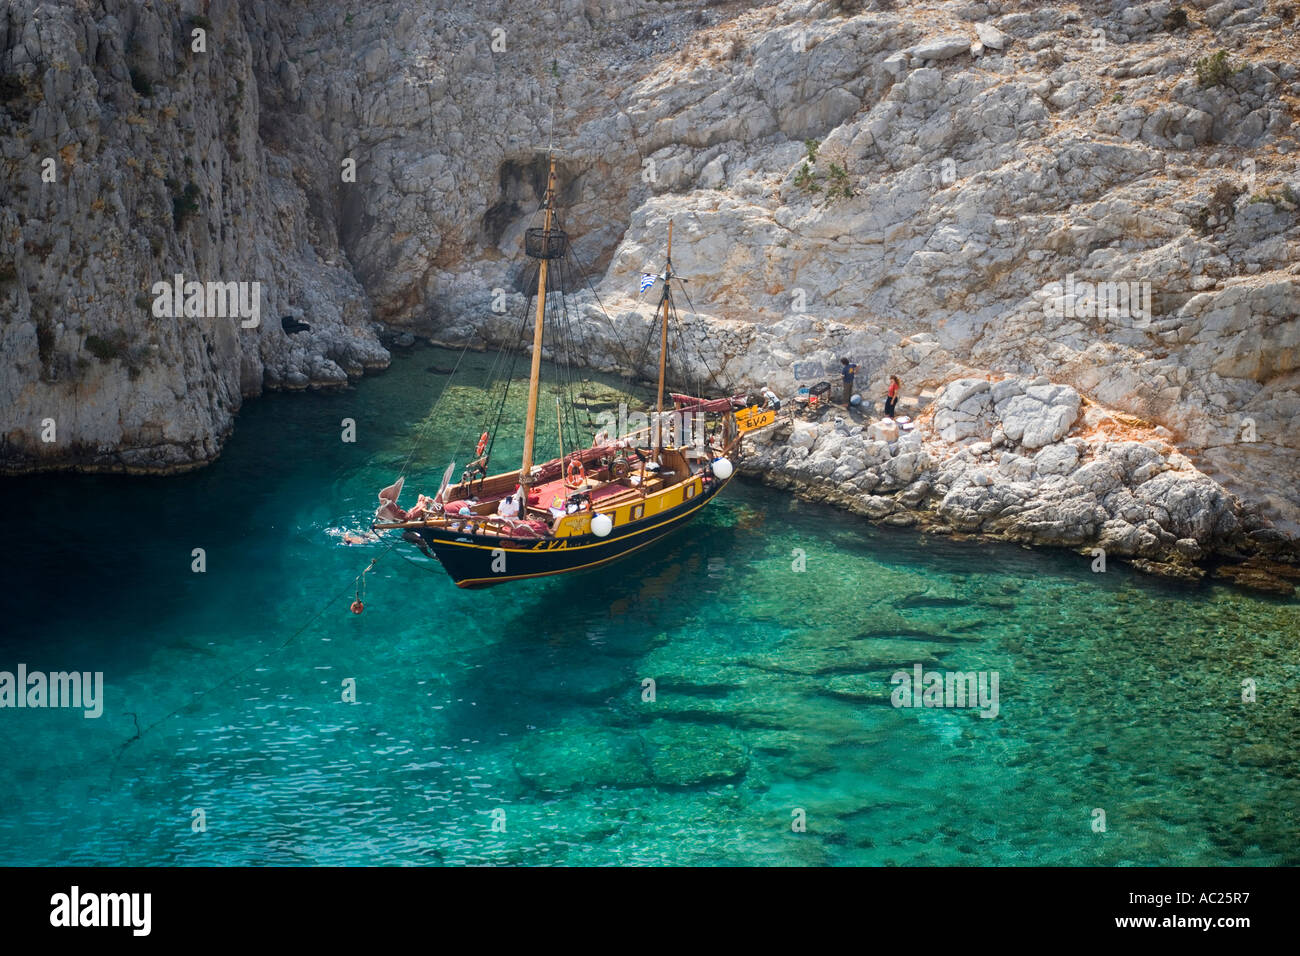 La natation de personnes dans une baie de Kalymnos à côté d'un bateau à voile en Grèce Banque D'Images